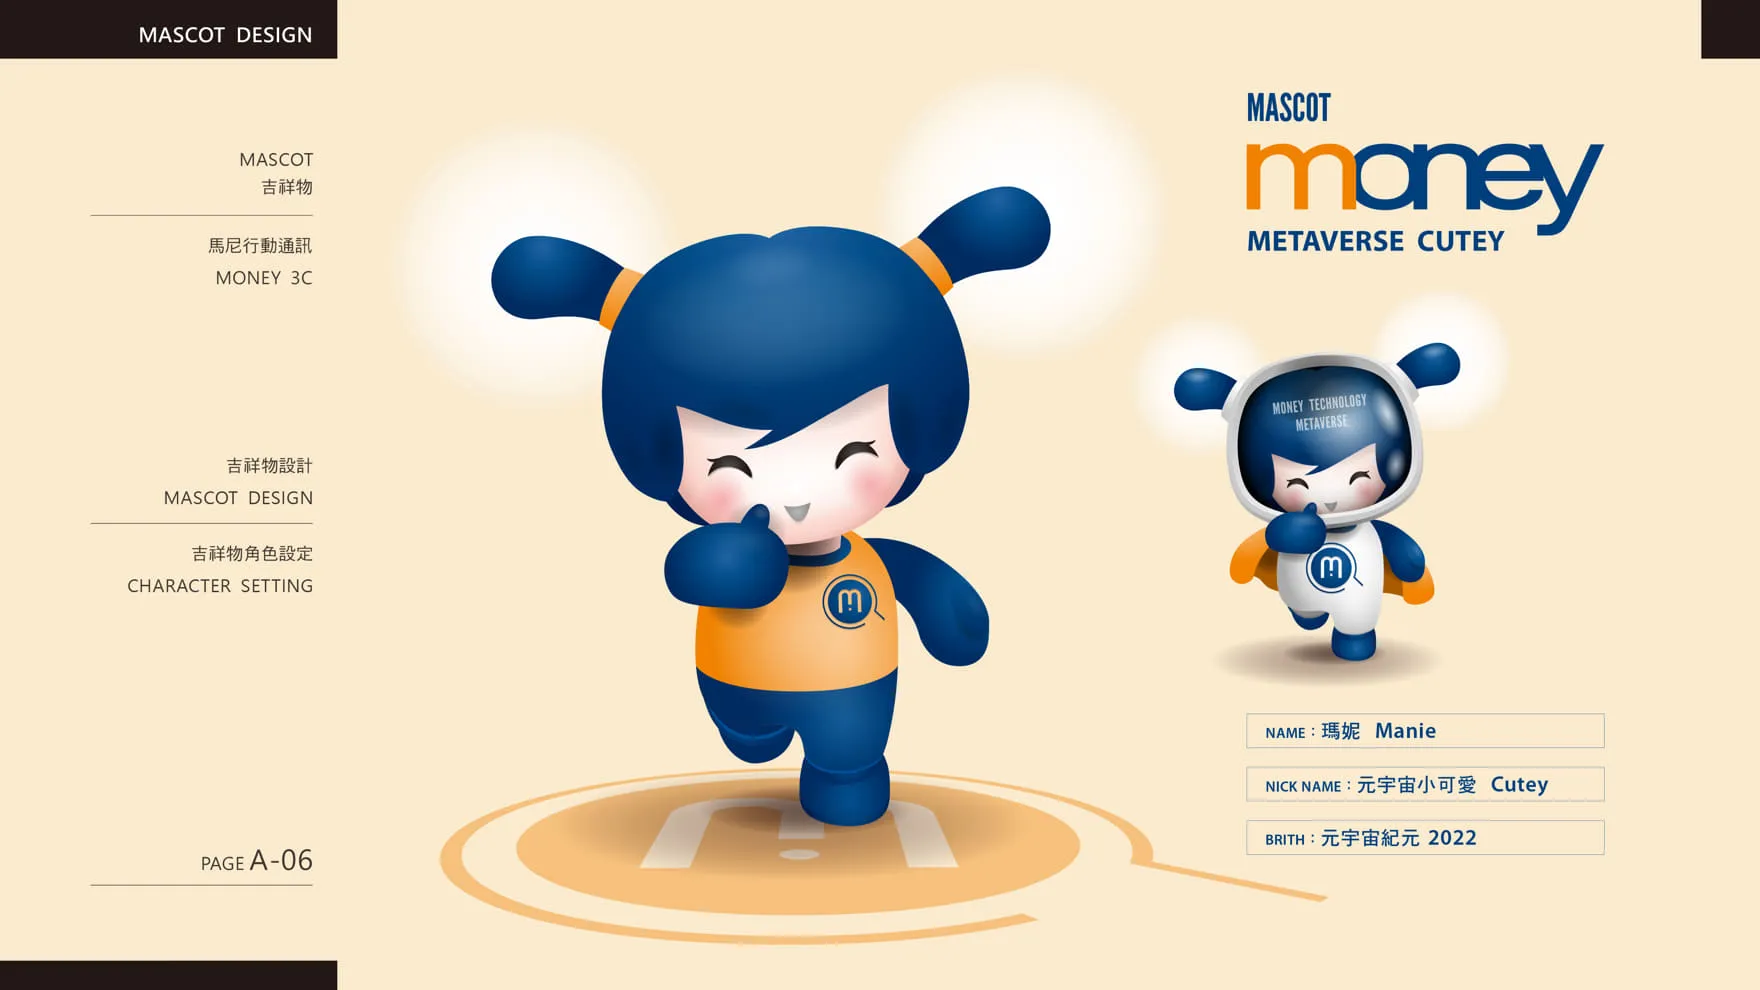 馬尼行動通訊品牌吉祥物設計角色基本資料設定 Mascot Character Setting